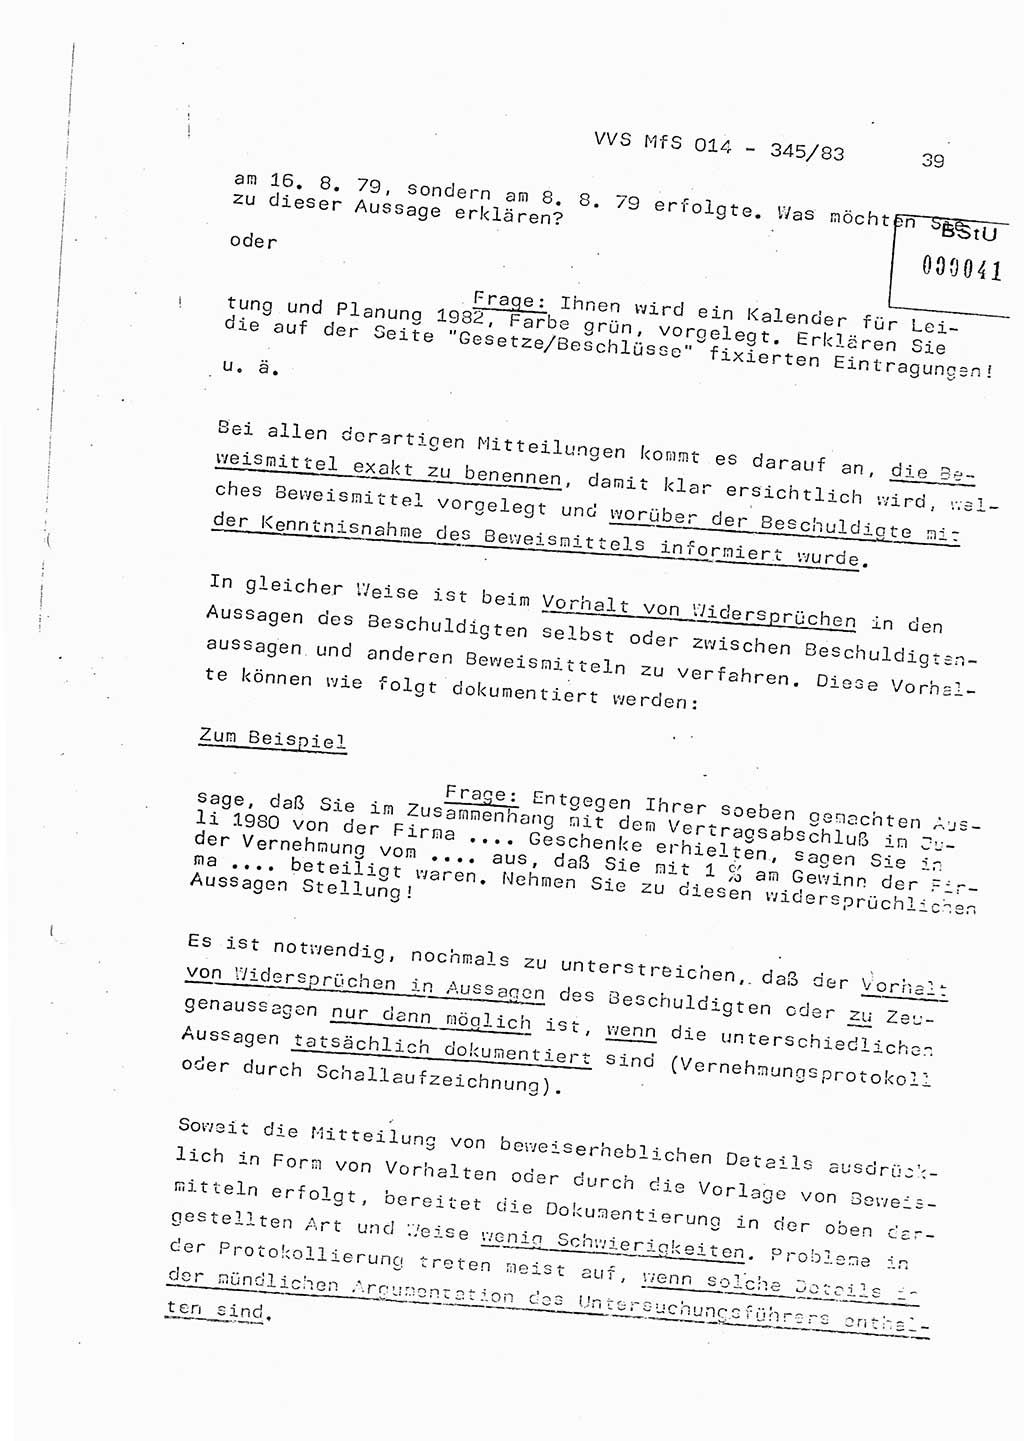 Lektion Ministerium für Staatssicherheit (MfS) [Deutsche Demokratische Republik (DDR)], Hauptabteilung (HA) Ⅸ, Vertrauliche Verschlußsache (VVS) o014-345/83, Berlin 1983, Seite 39 (Lekt. MfS DDR HA Ⅸ VVS o014-345/83 1983, S. 39)